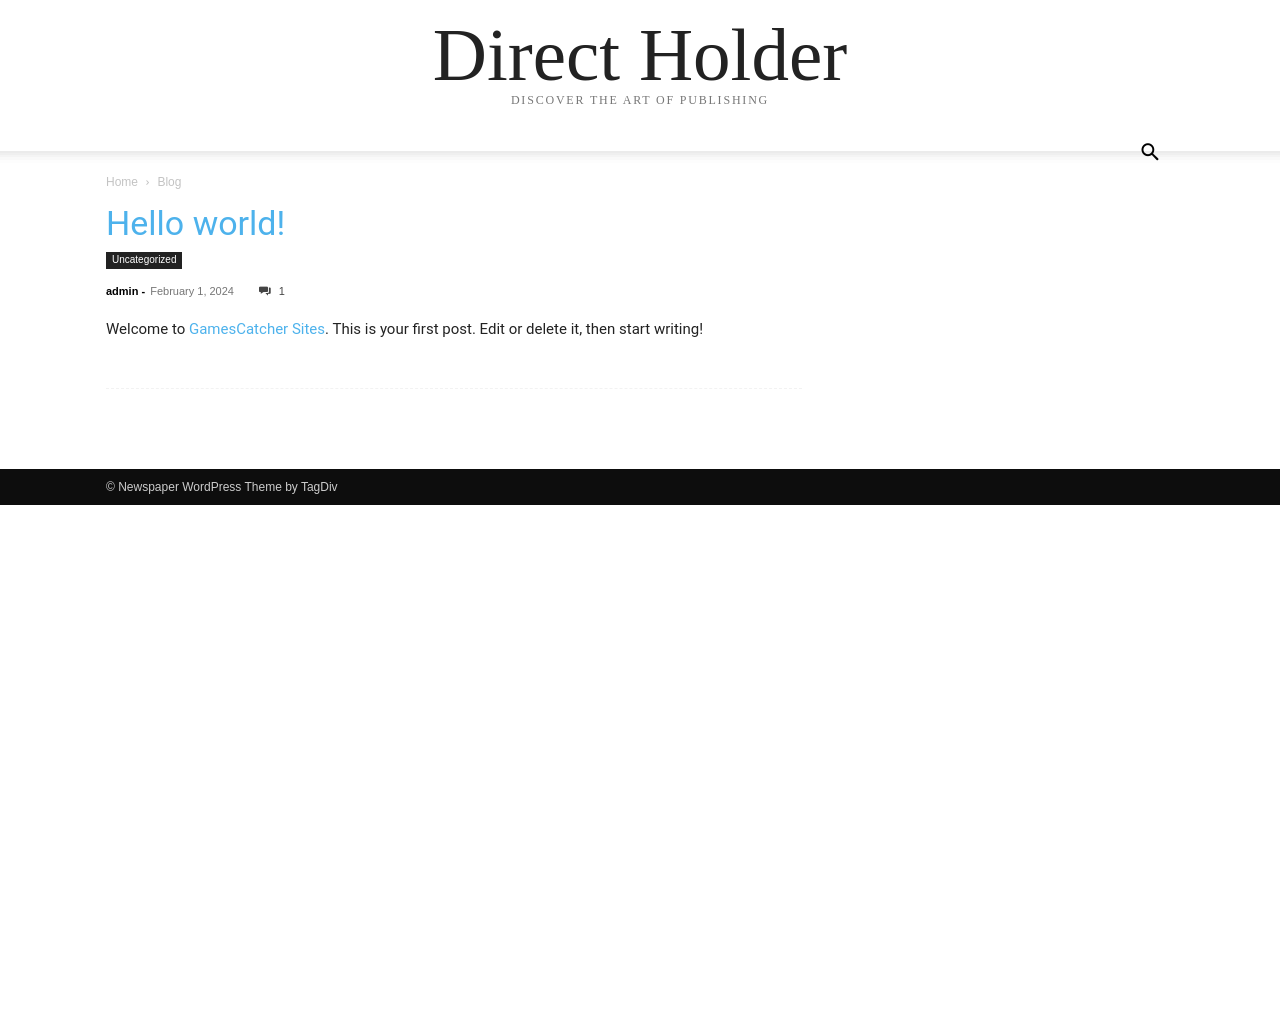 directholder.com